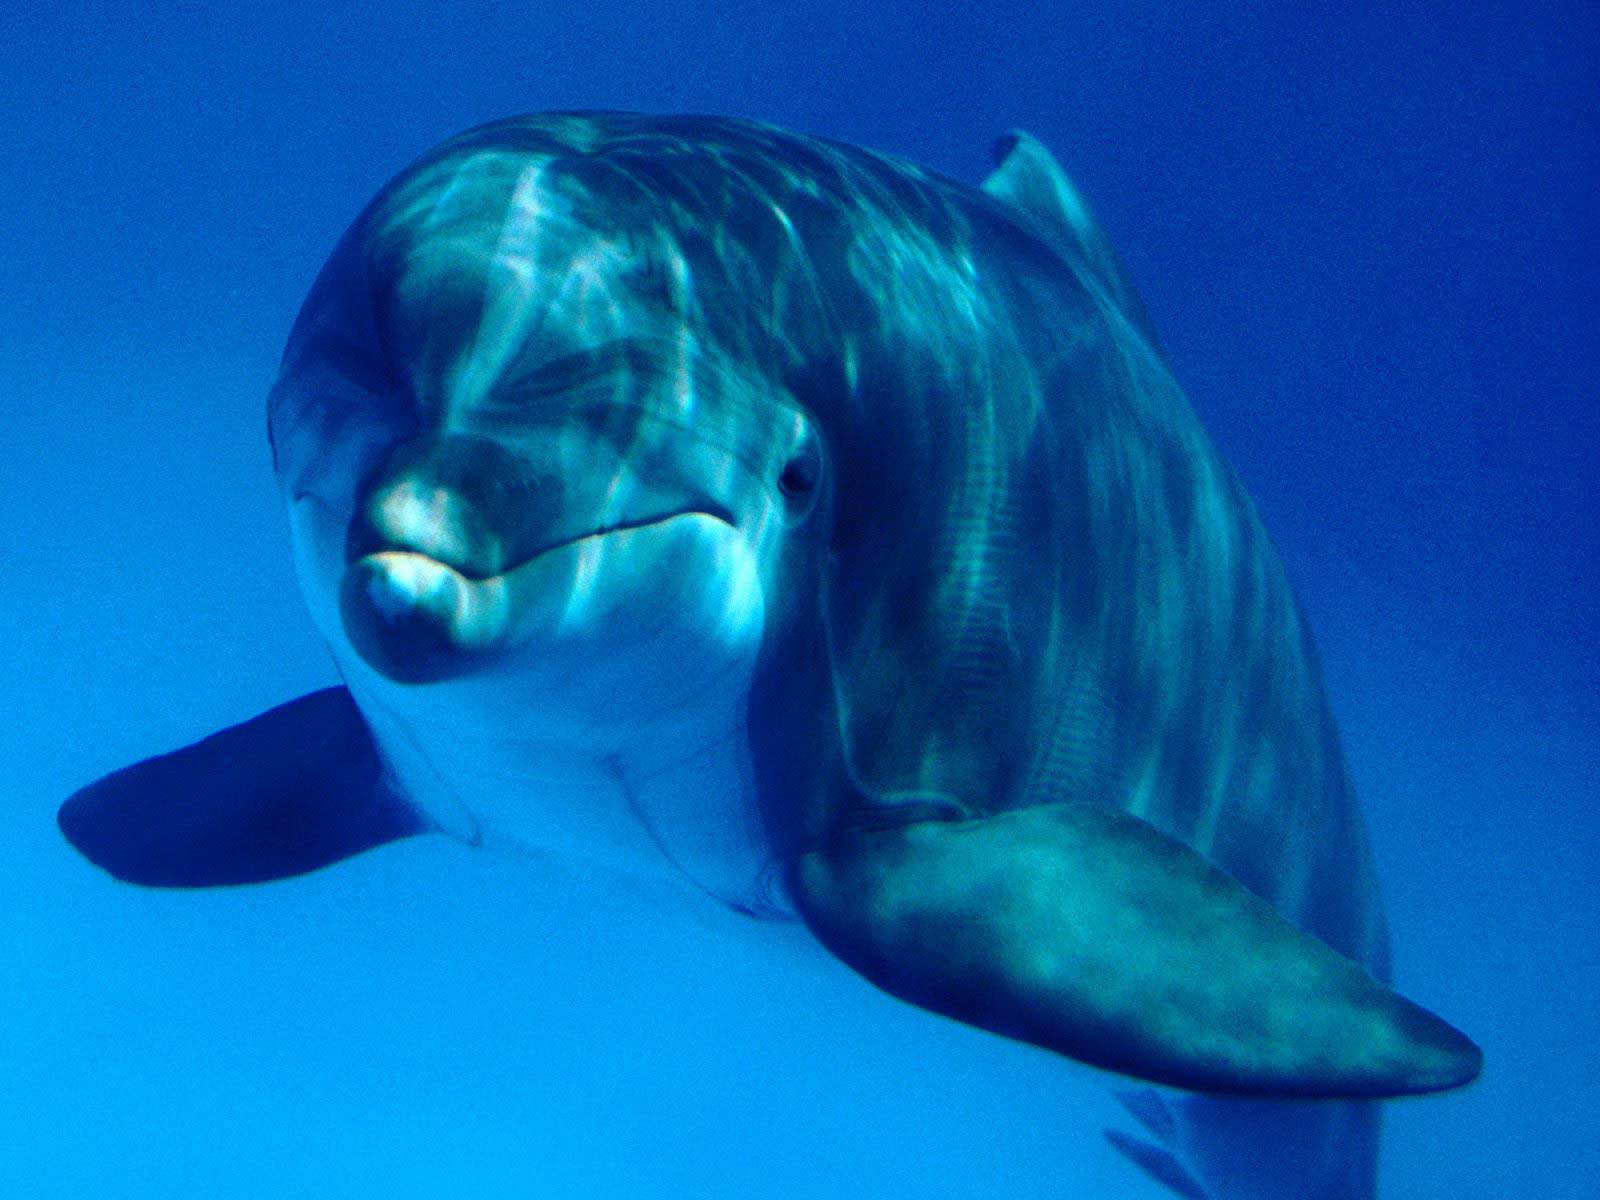 Дельфин под водой бесплатно